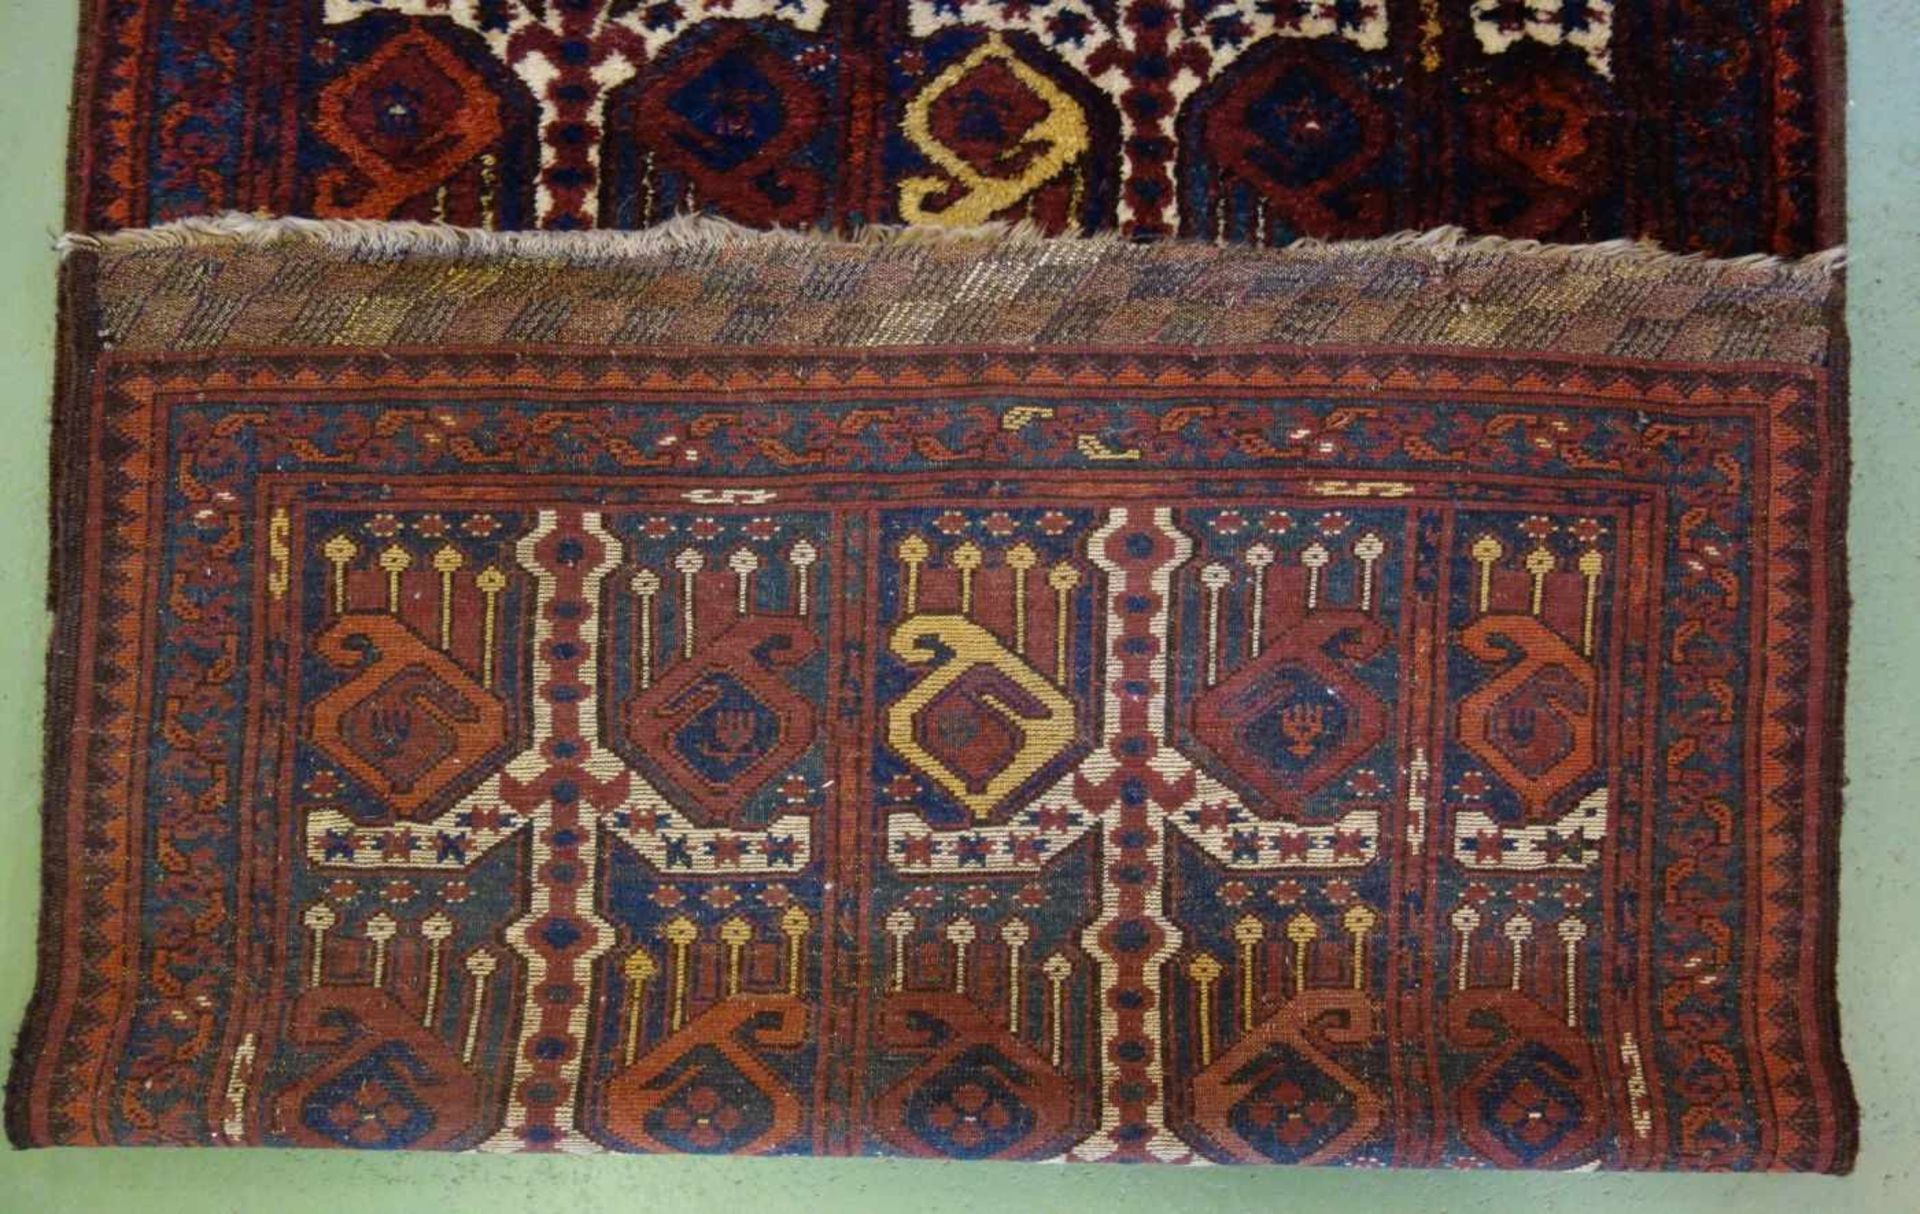 BESCHIR (ERSARI BESCHIR) / KLEINER TEPPICH / carpet / Zentralasien oder Südturkestan, wahrscheinlich - Image 4 of 15